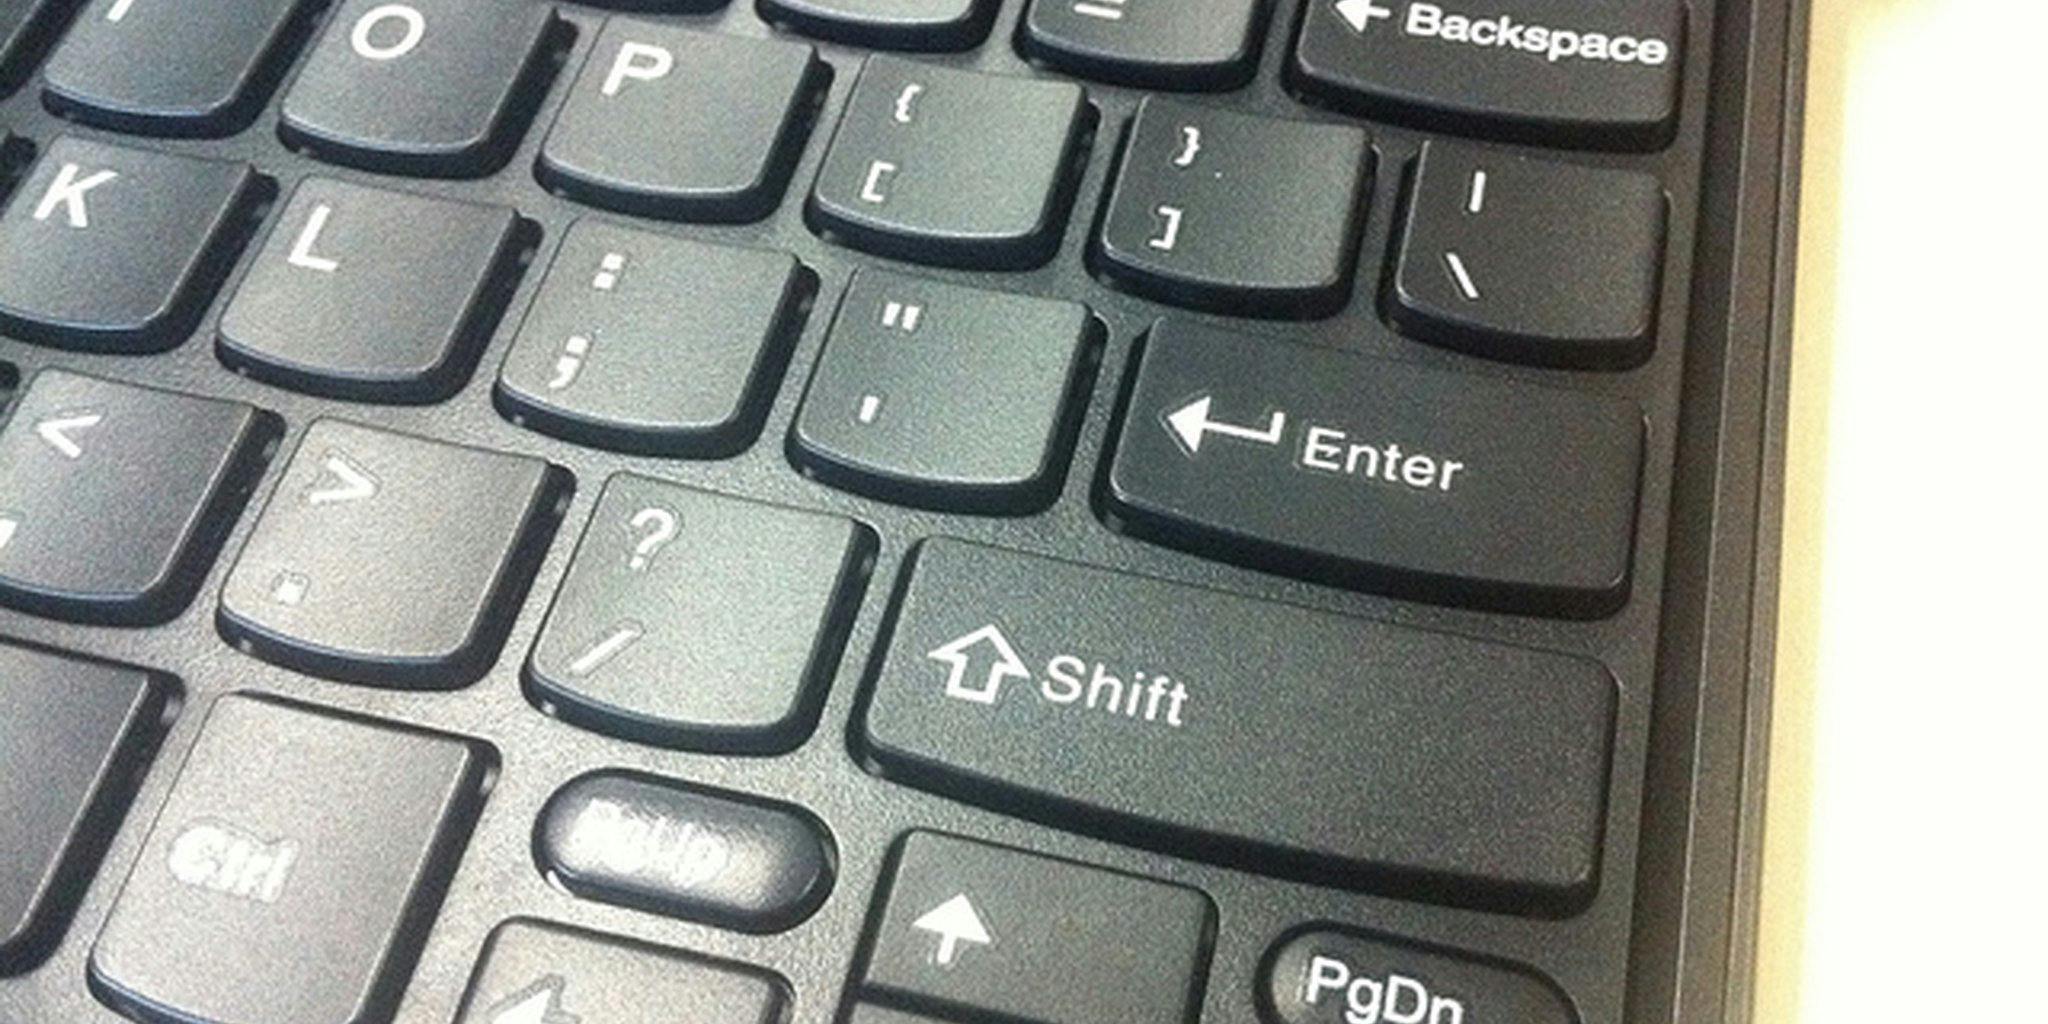 Enter shift клавиши. Кнопка шифт на клавиатуре. Клавиша шифт на клавиатуре. Кнопка шифт на ноутбуке. Клавиша шифт на компьютере.